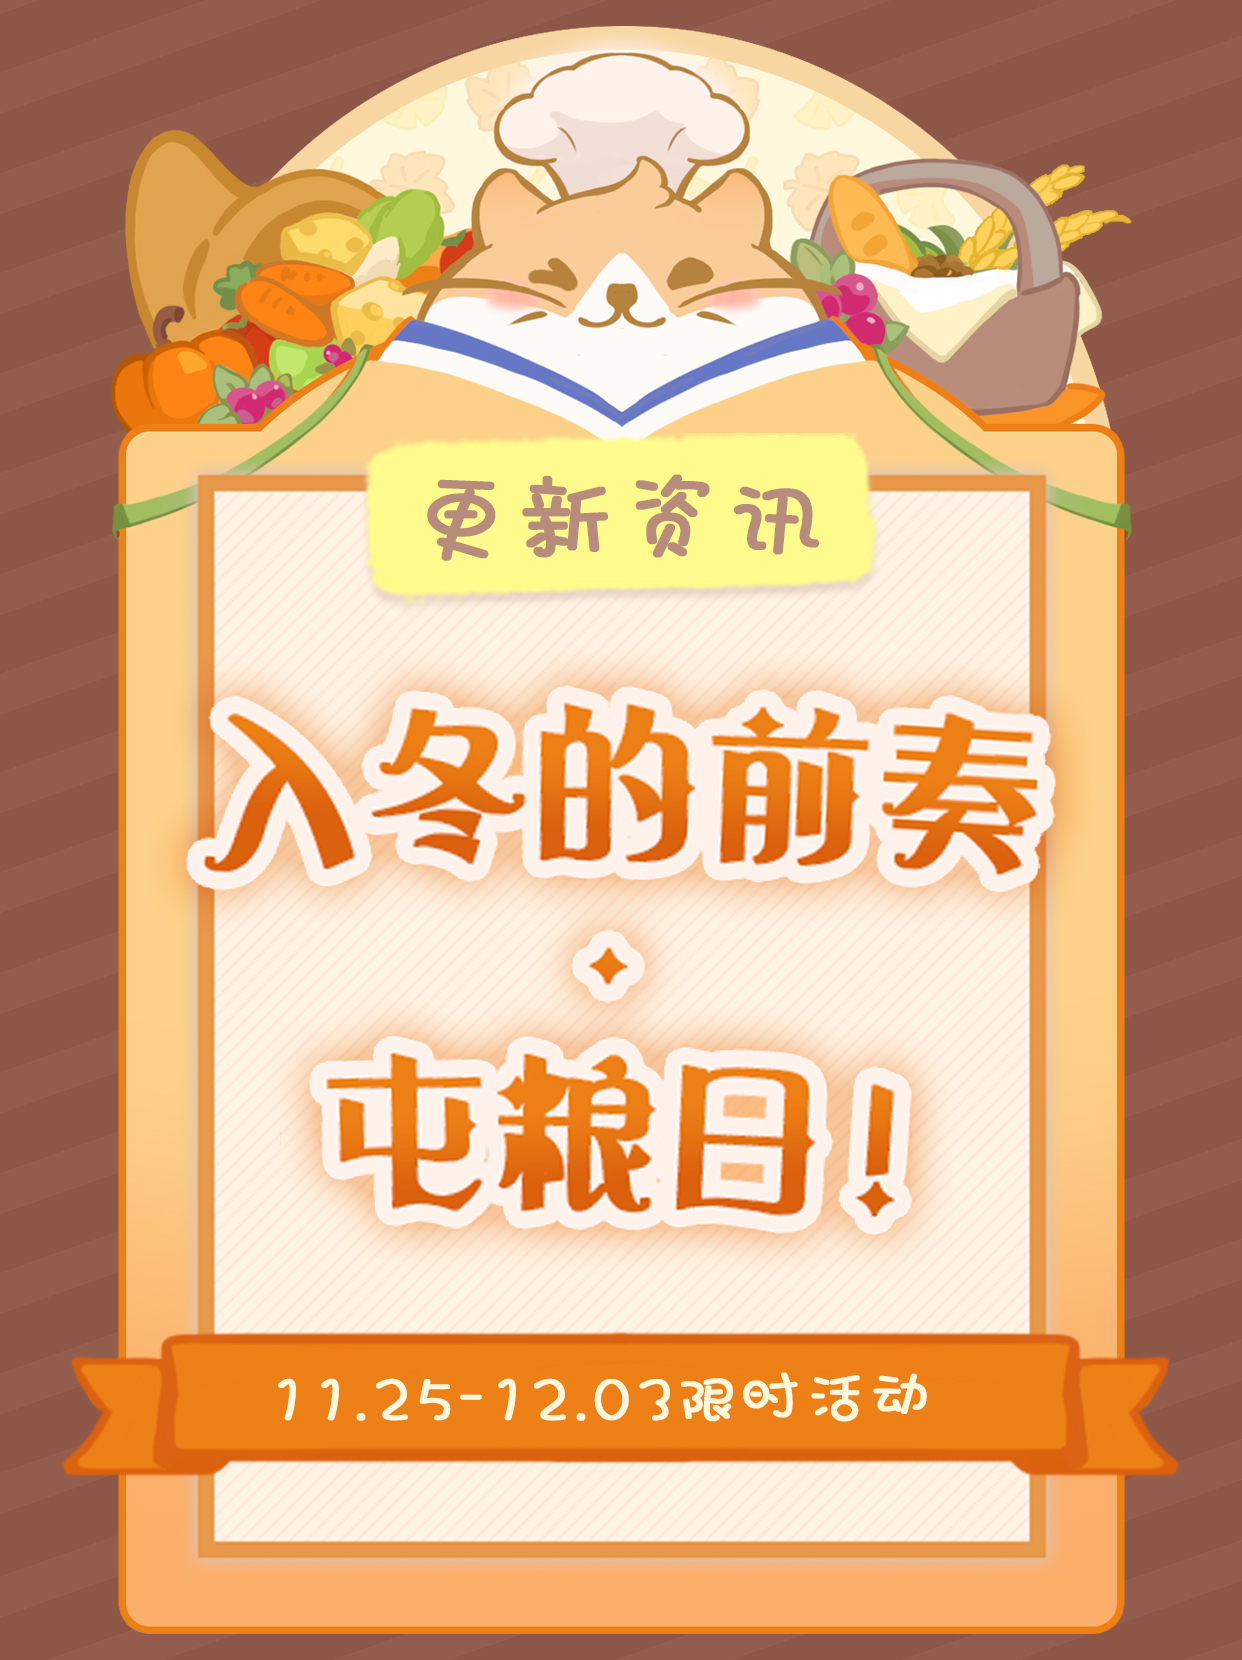 【花花快报】秋冬美食节活动来啦